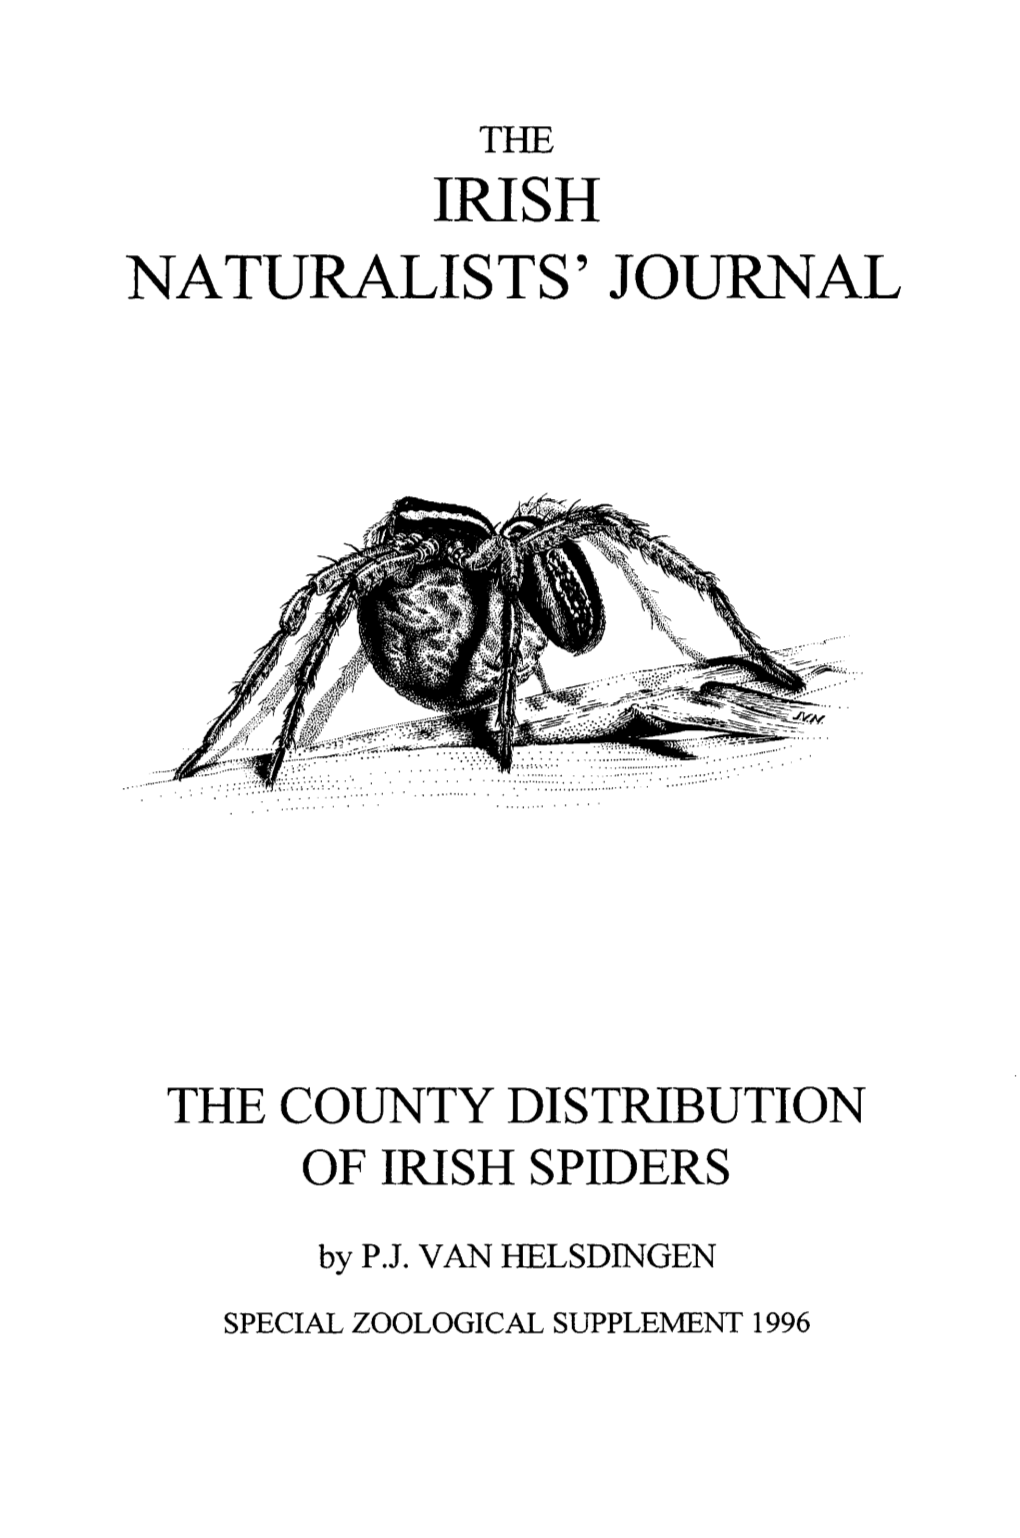 Irish Naturalists' Journal